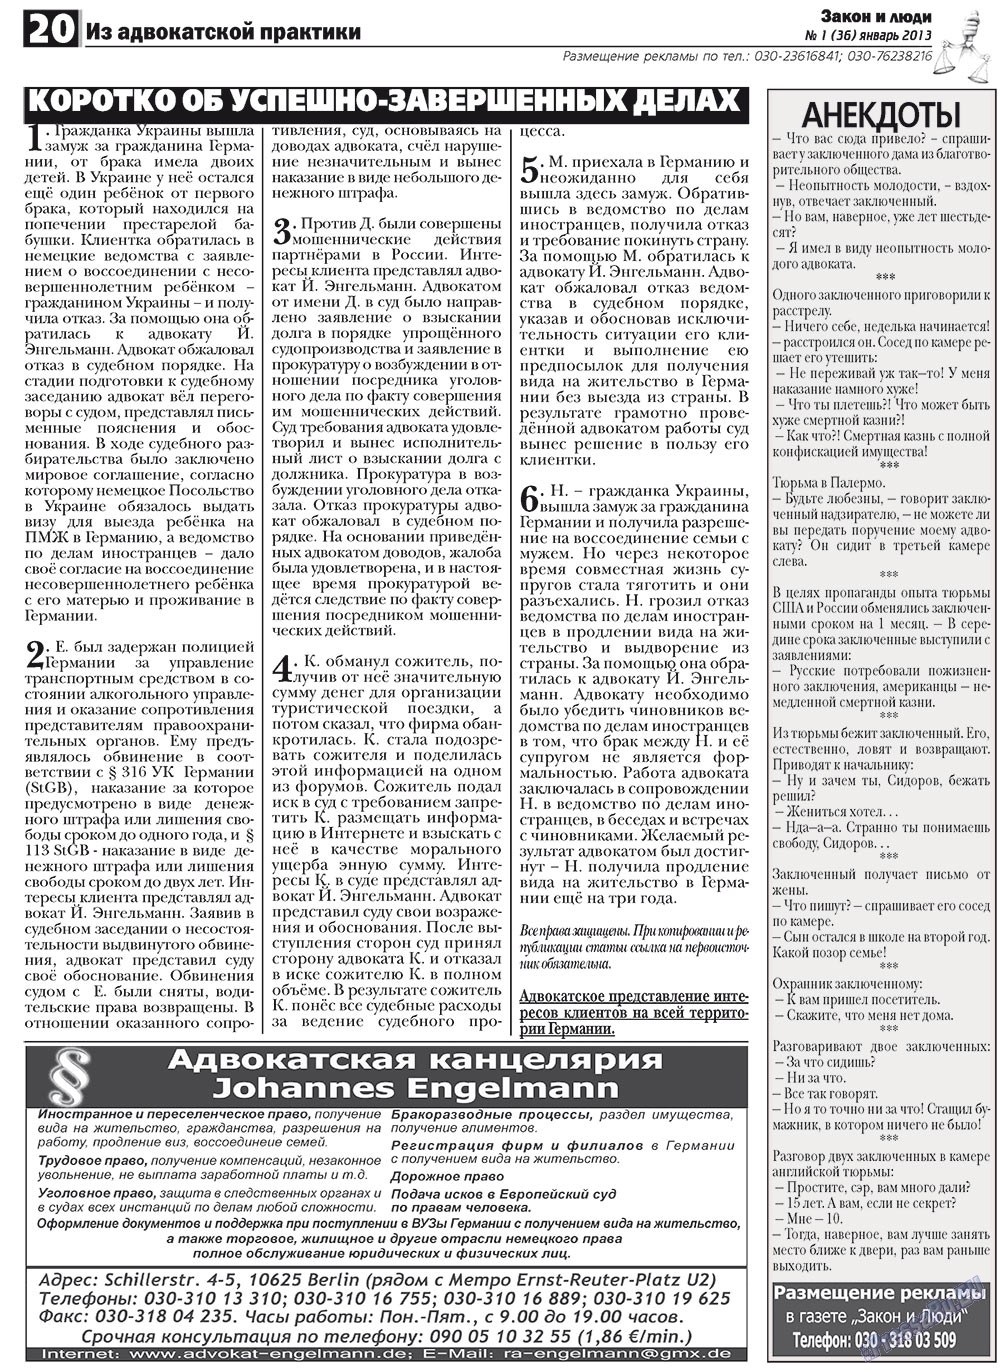 Закон и люди, газета. 2013 №1 стр.20